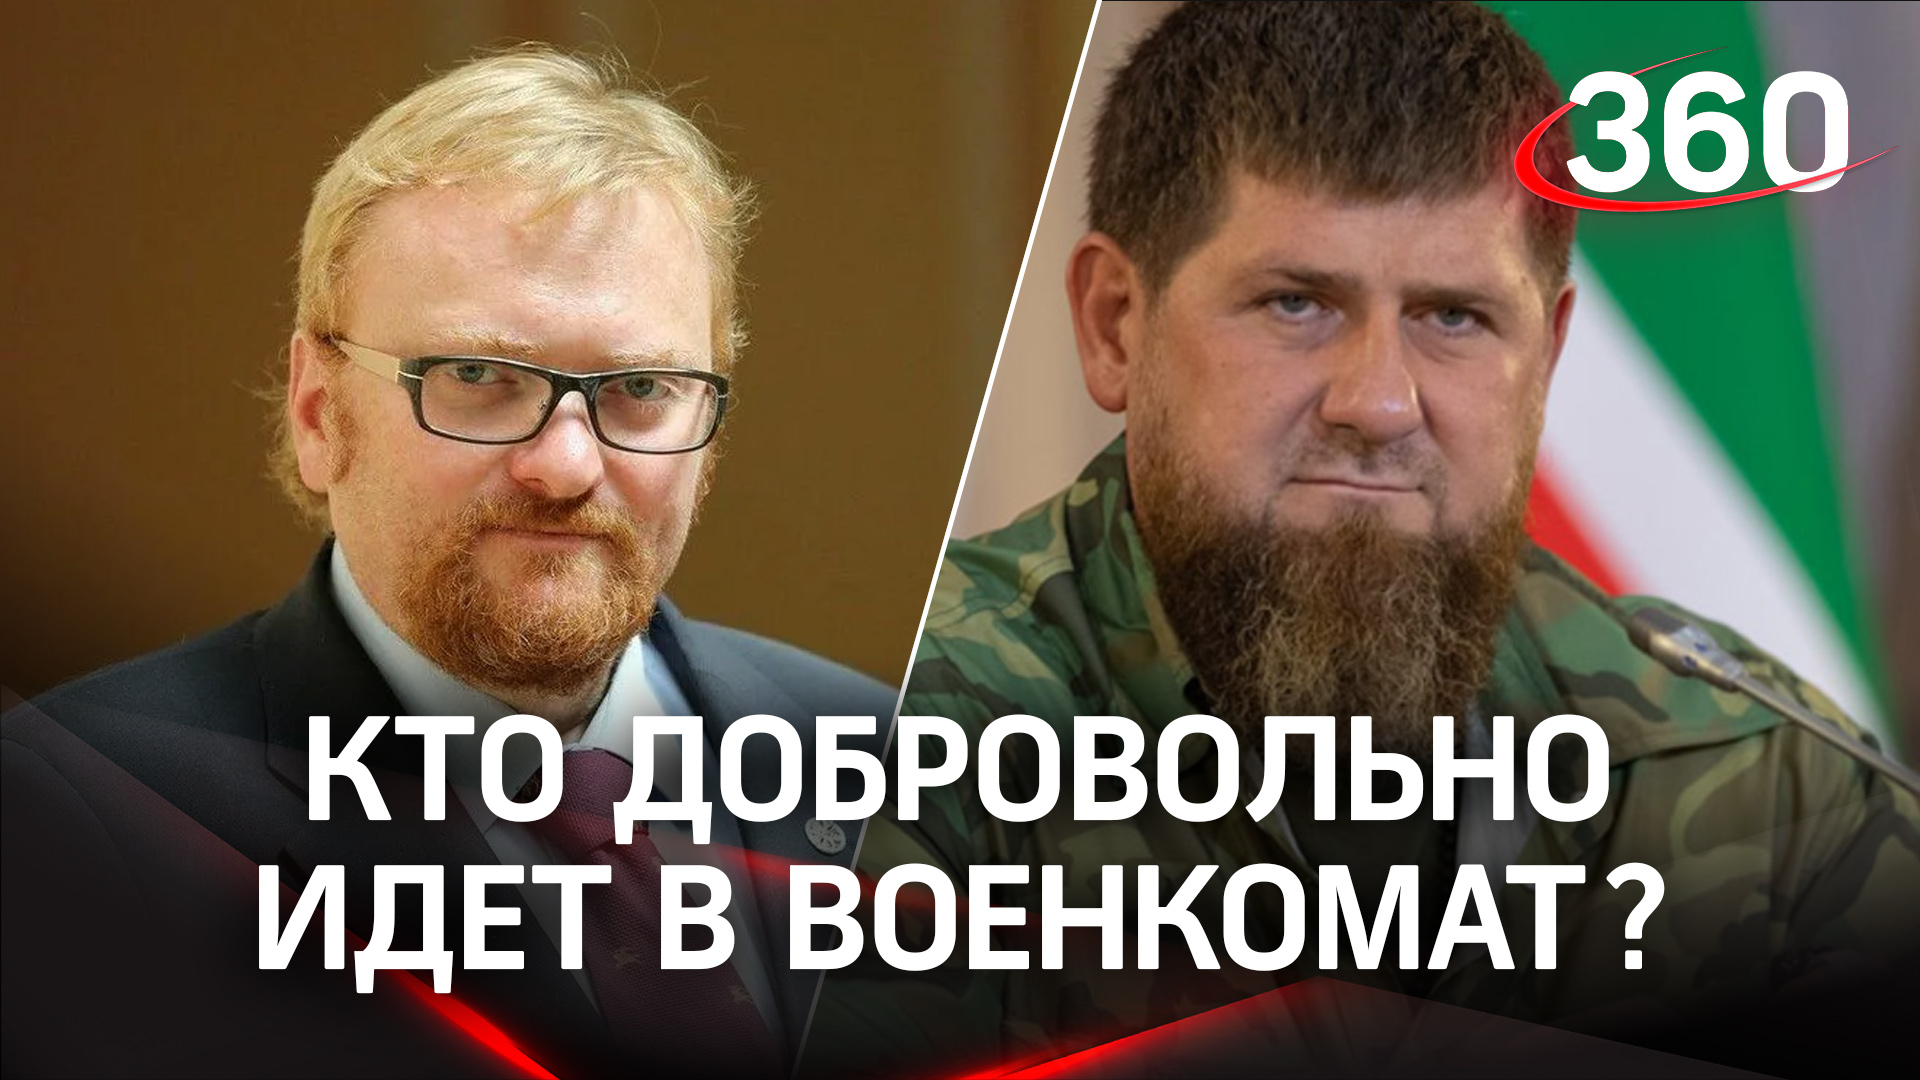 Милонов просится на передовую, Чечня перевыполнила план по призыву на 254% - первые дни мобилизации